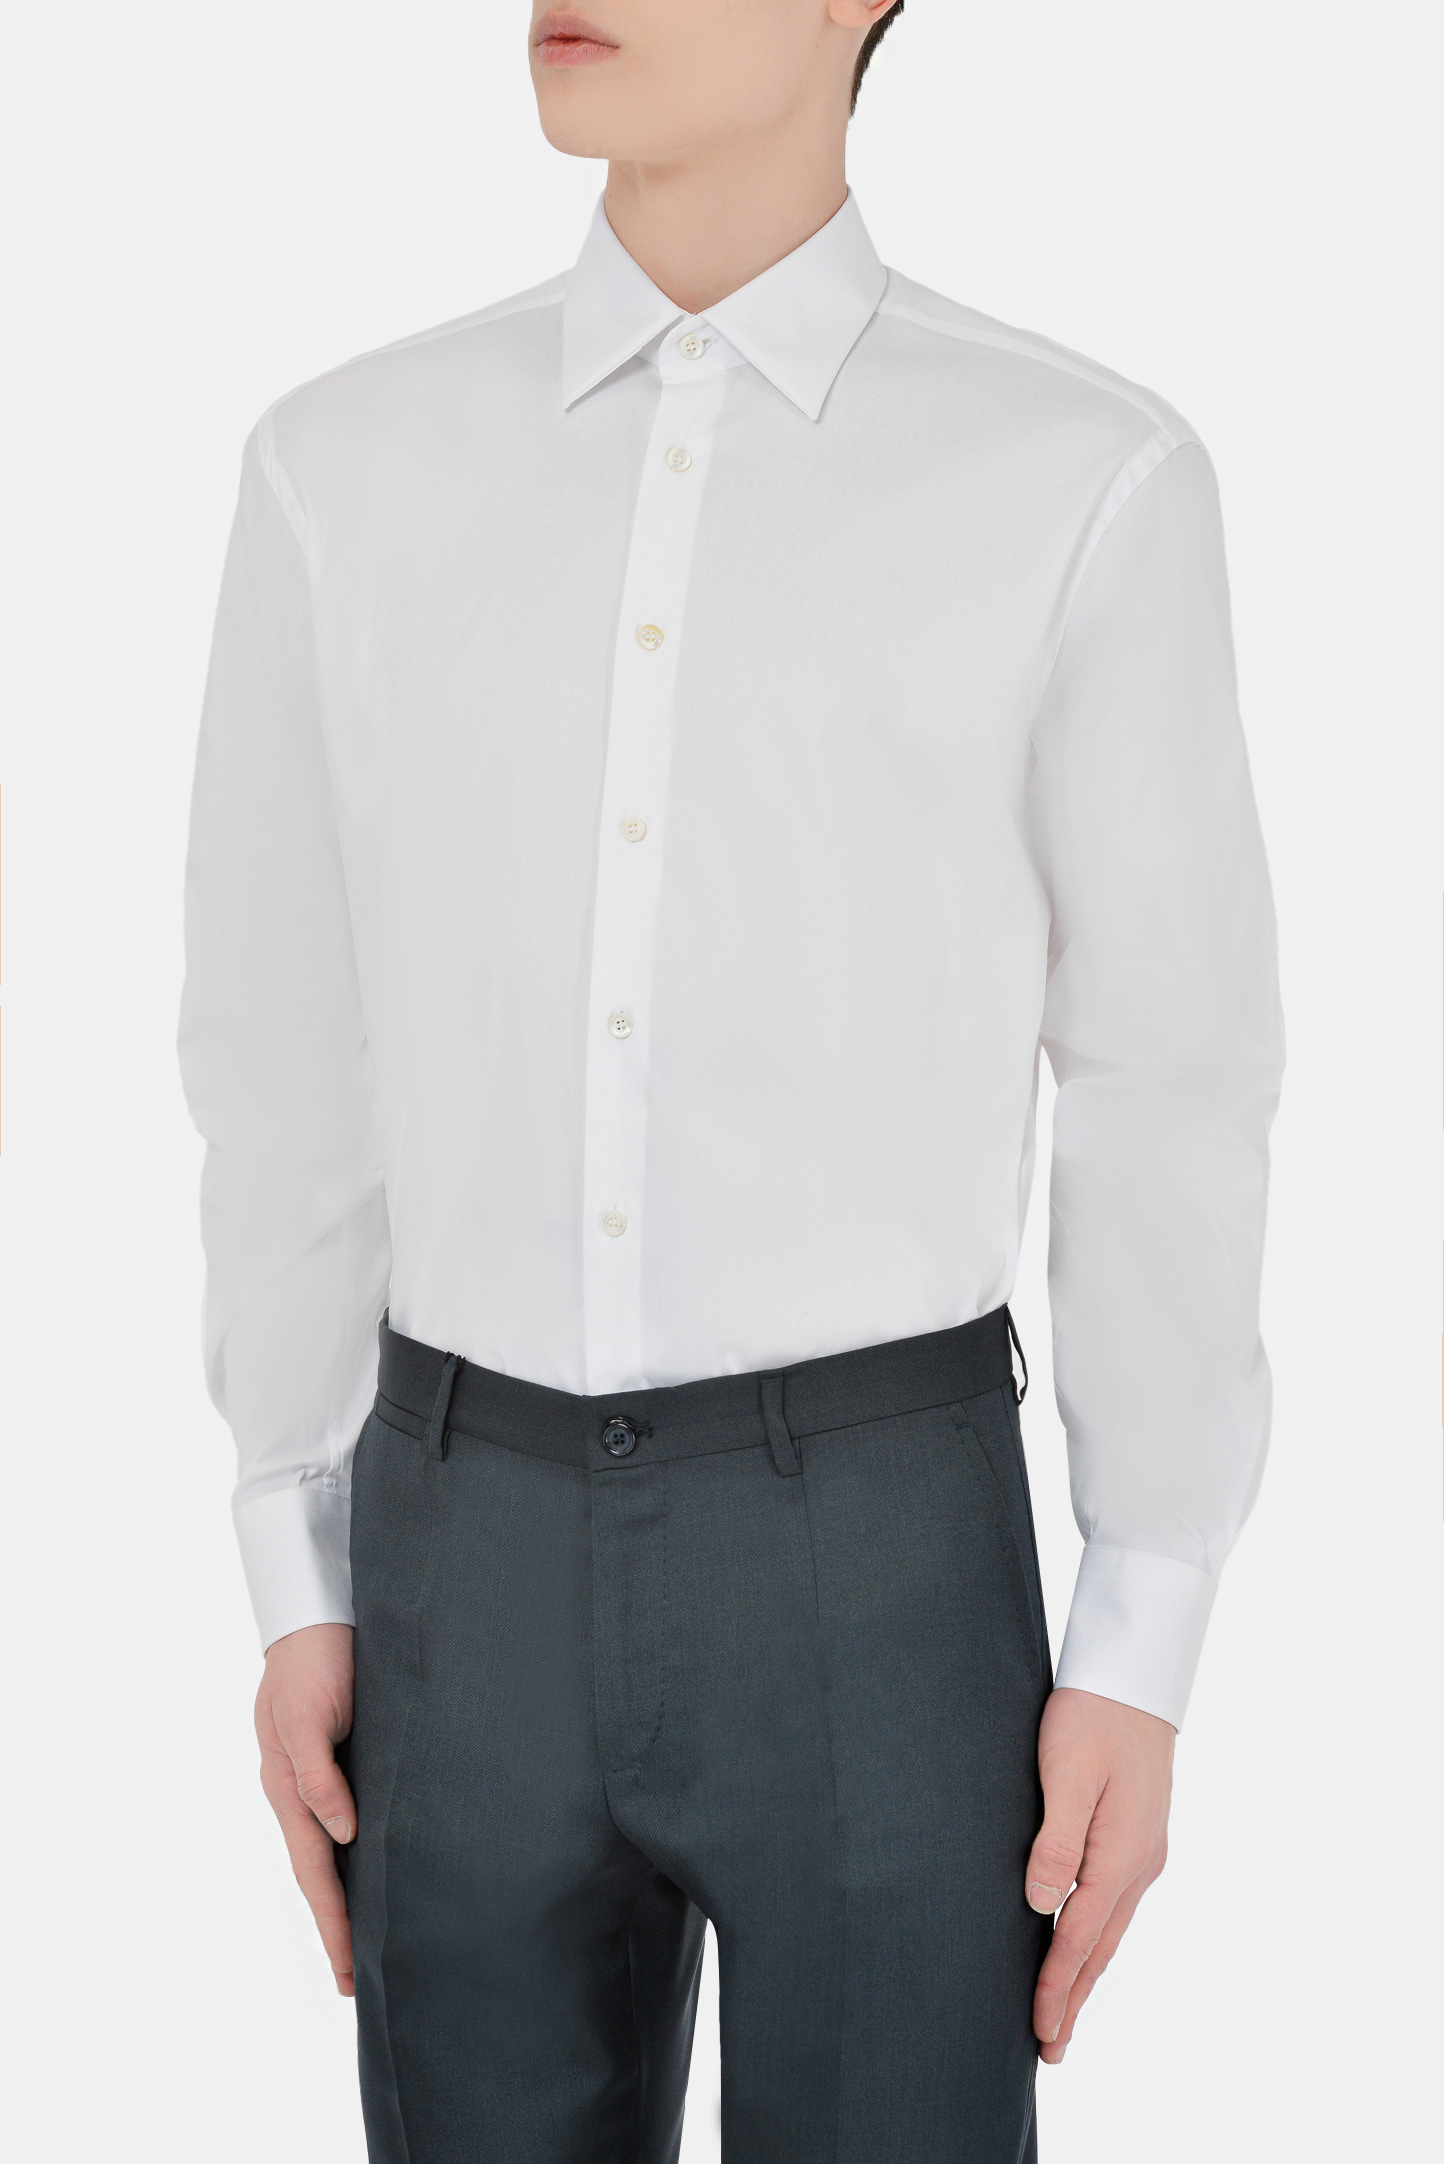 Рубашка PRADA UCM473 F62, цвет: Белый, Мужской